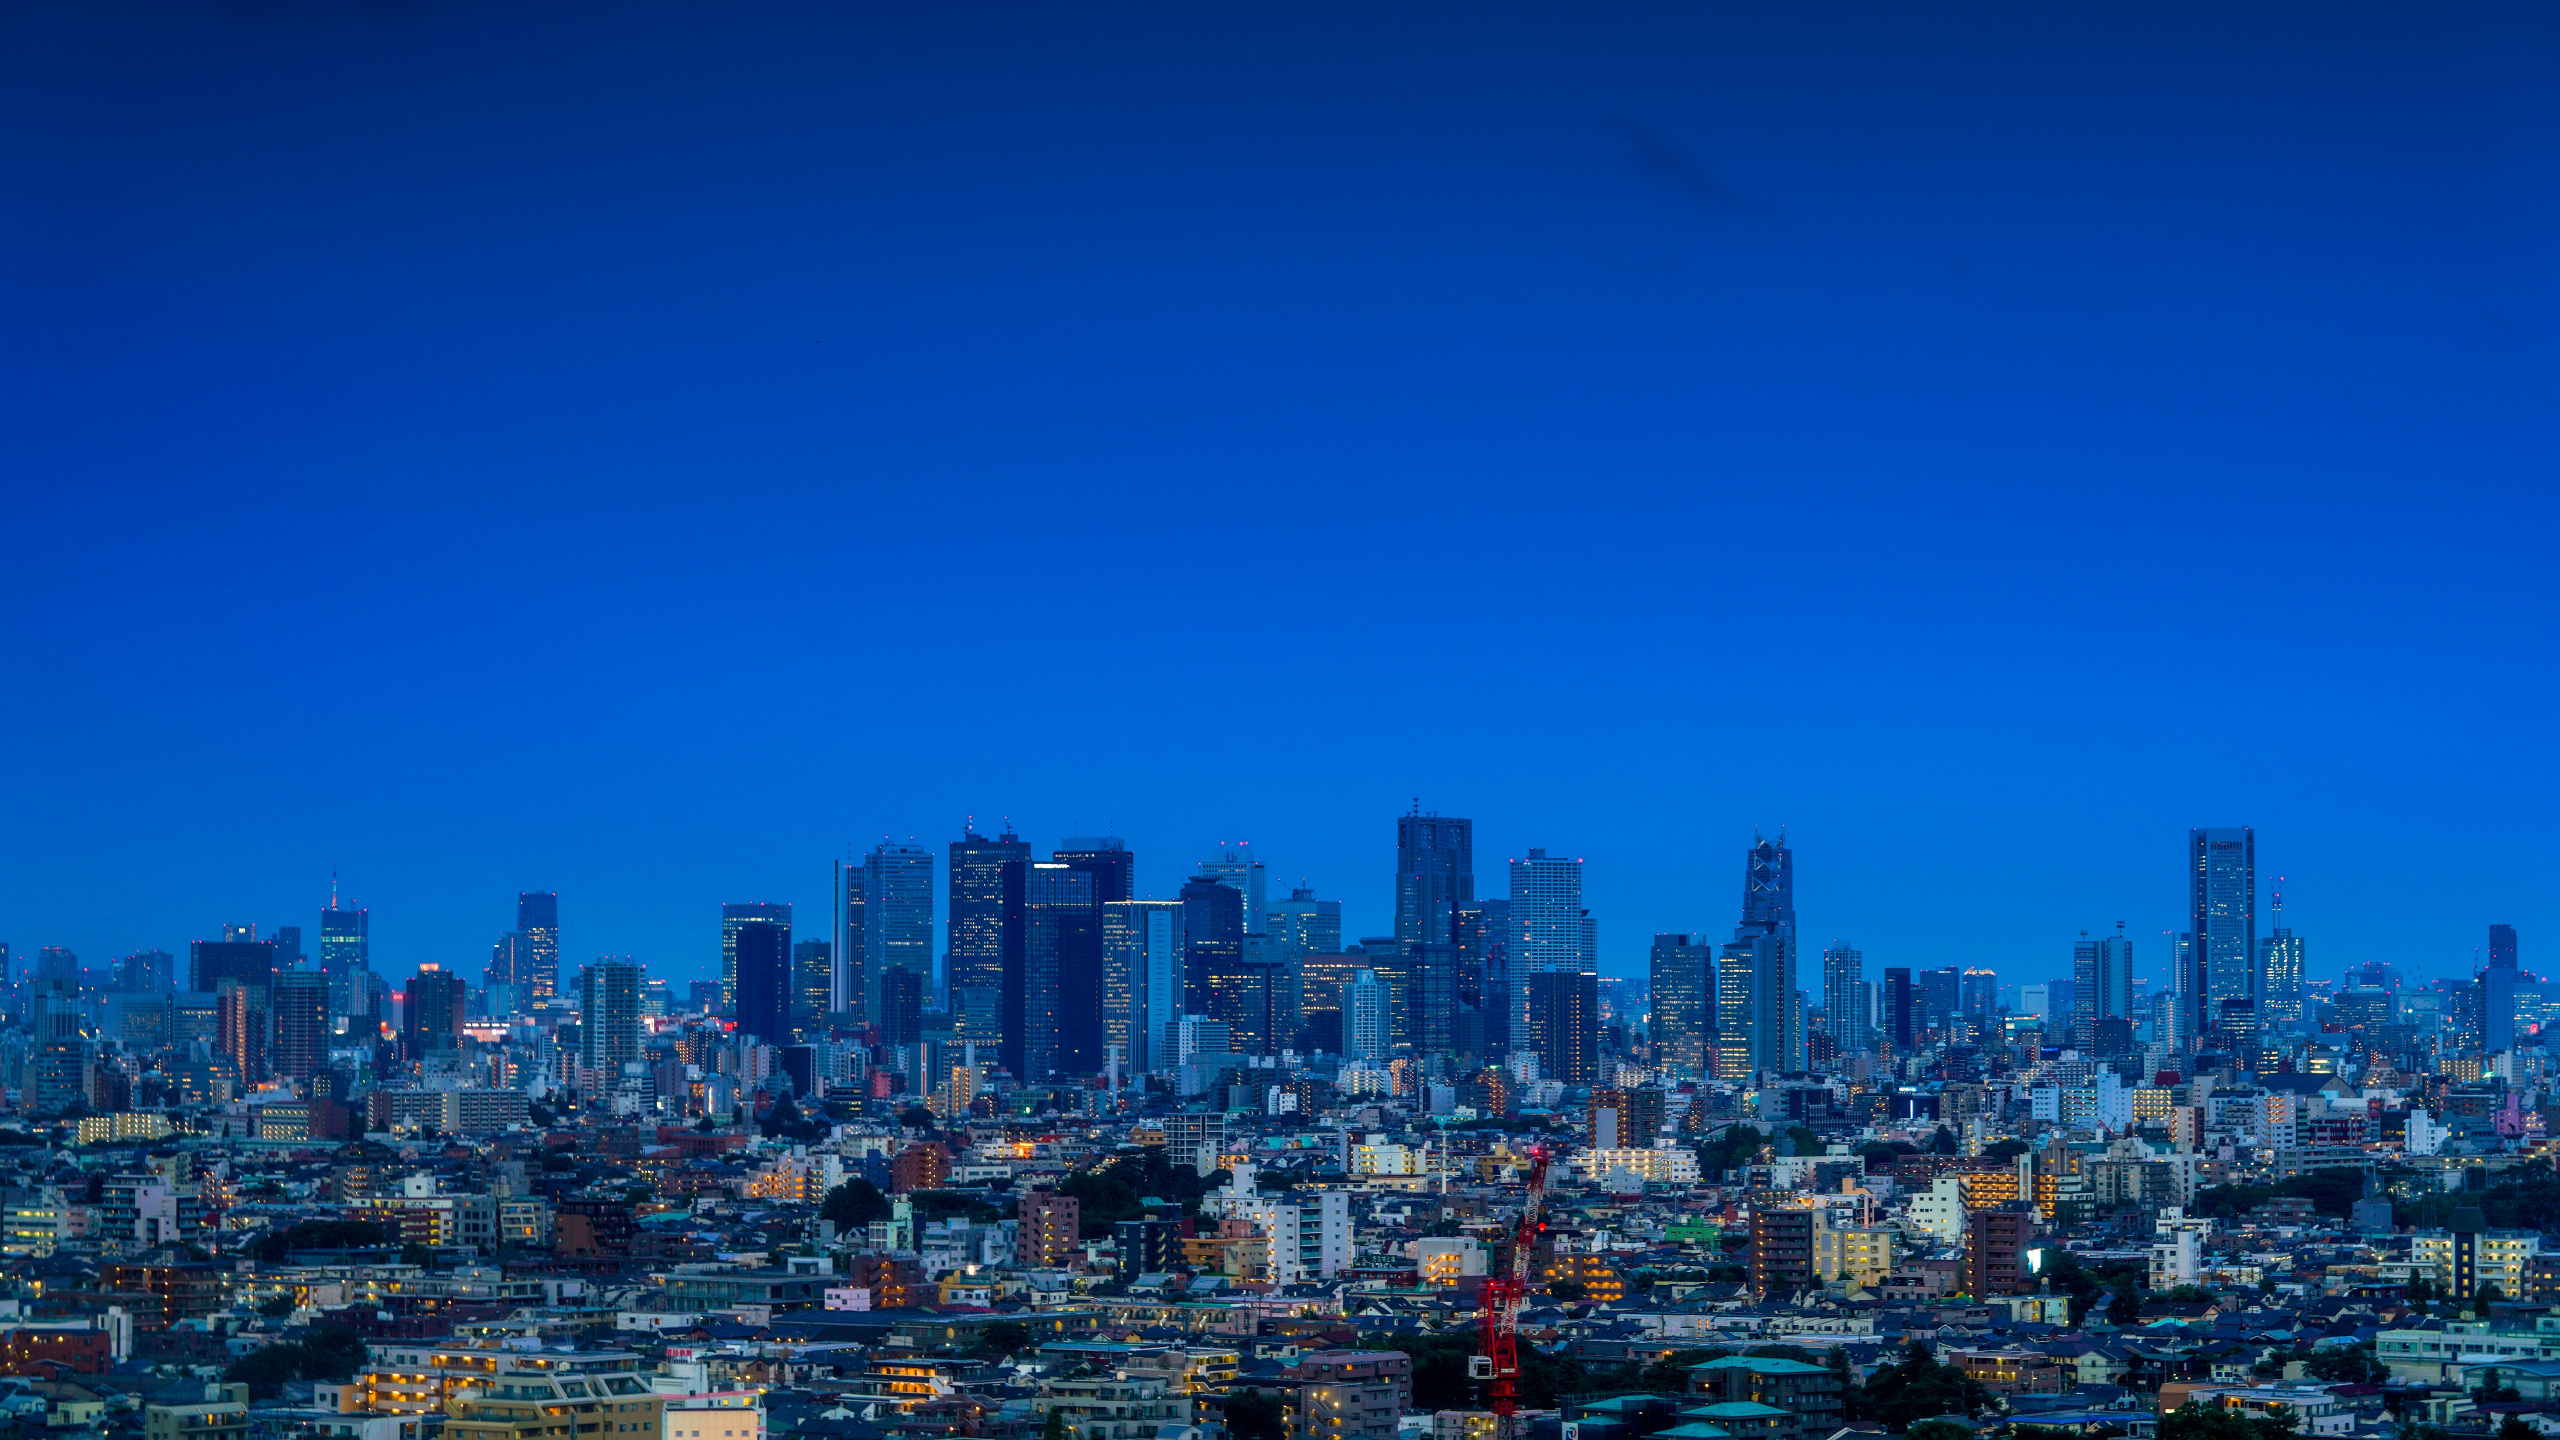 Ciudad Con Edificios de Gran Altura Bajo un Cielo Azul Durante el Día. Wallpaper in 2560x1440 Resolution